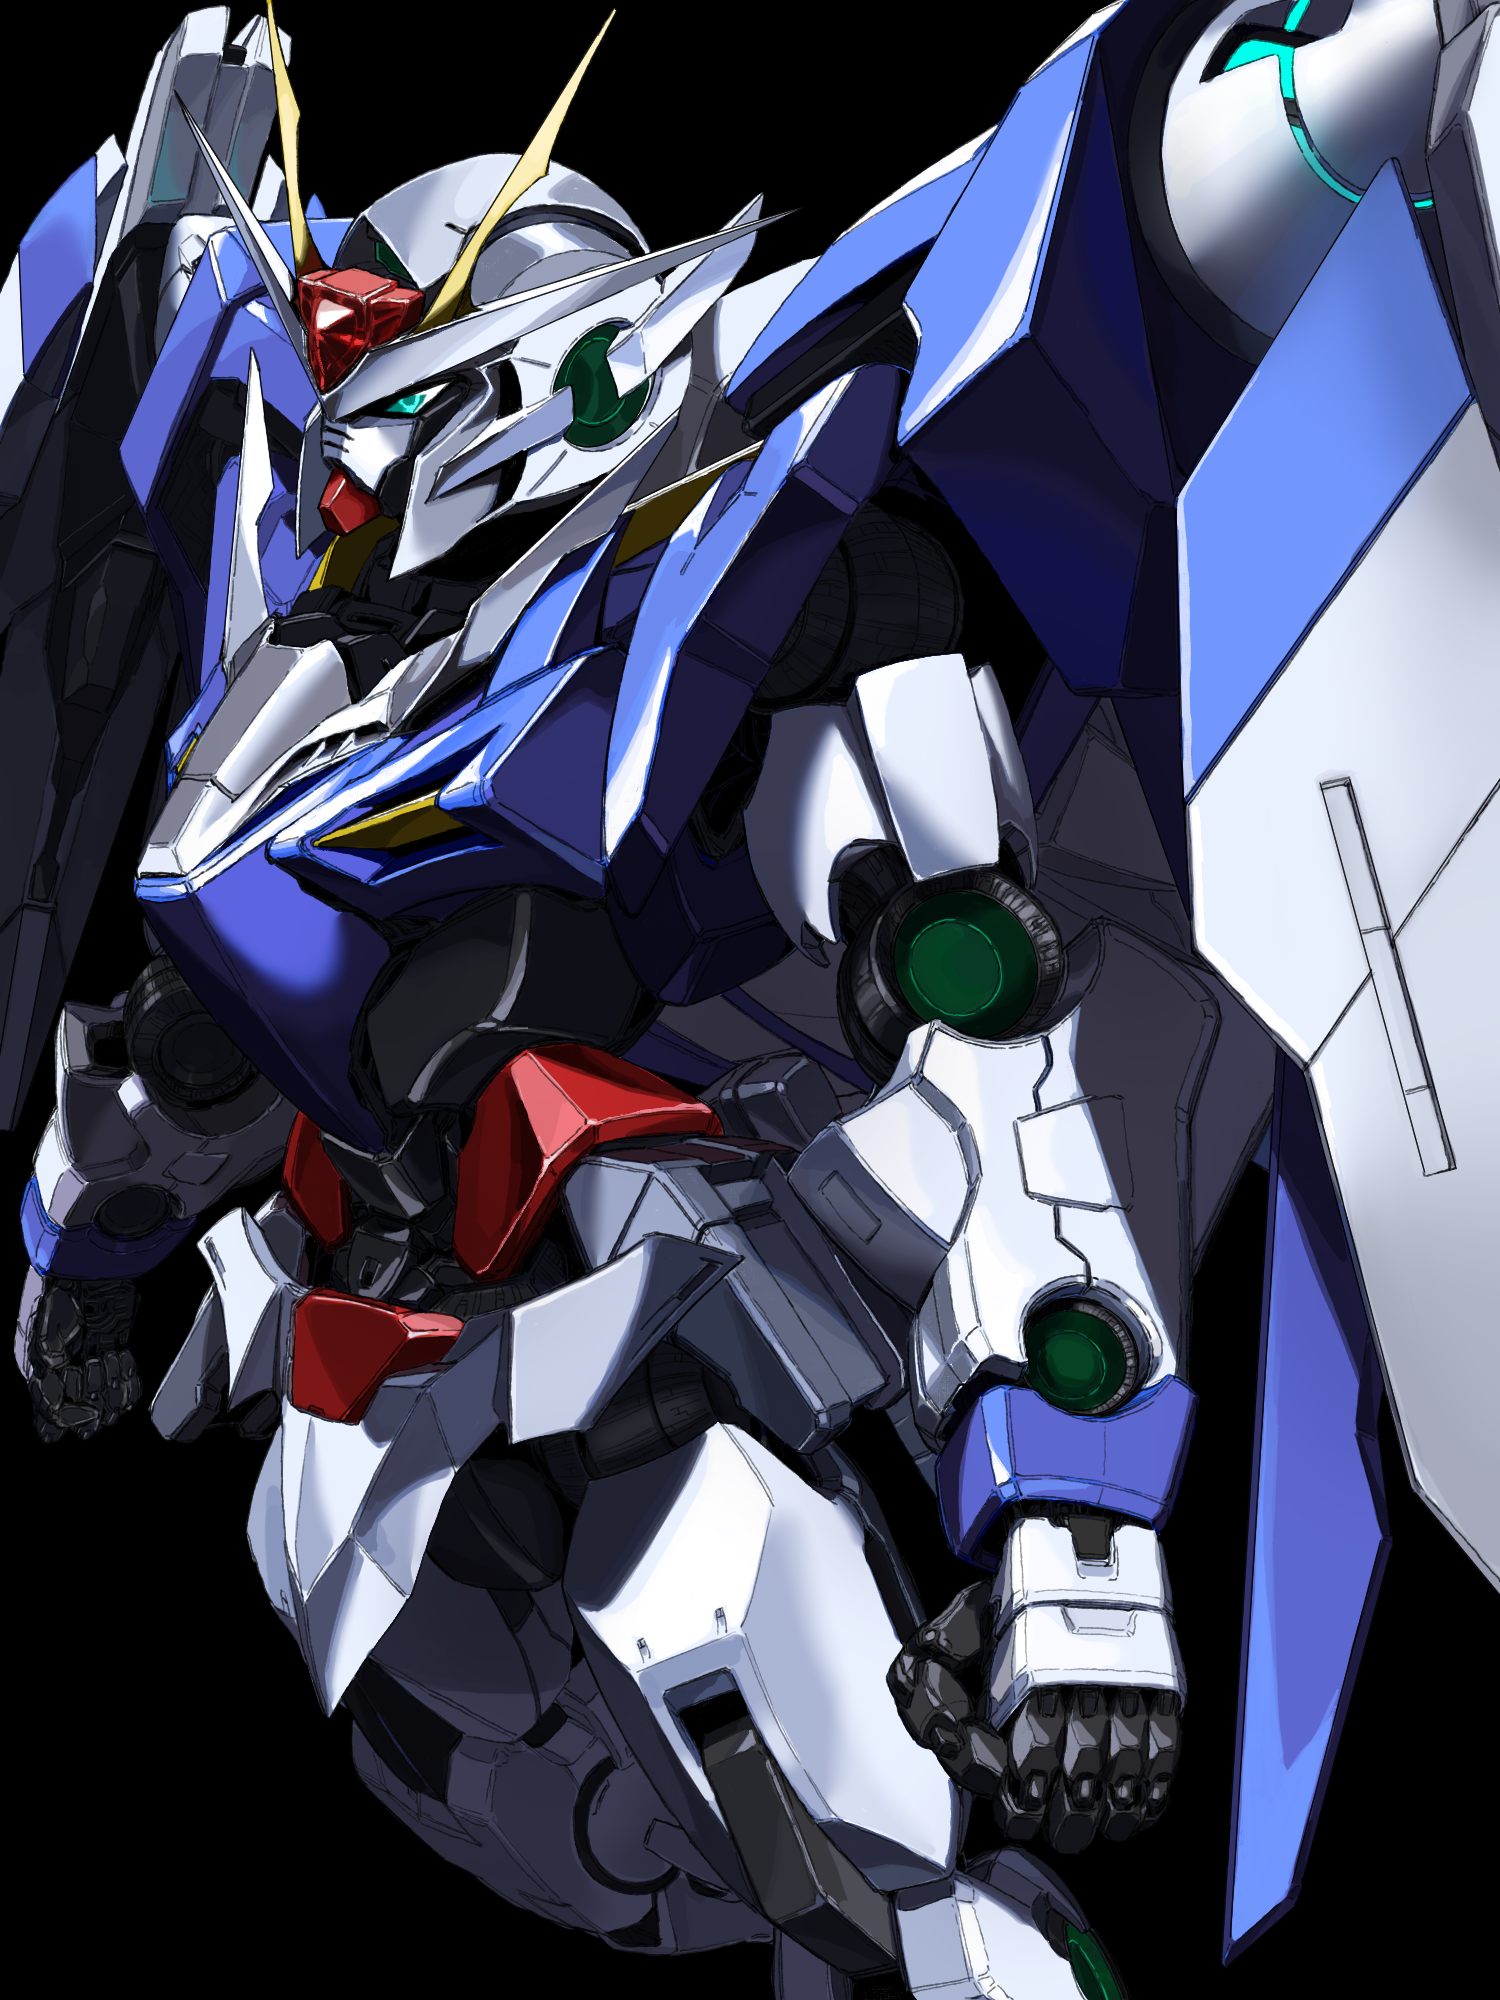 Anime Mechs Super Robot Wars Mobile Suit Gundam 00 Gundam 00 Raiser Artwork Digital Art Fan Art 1500x2000